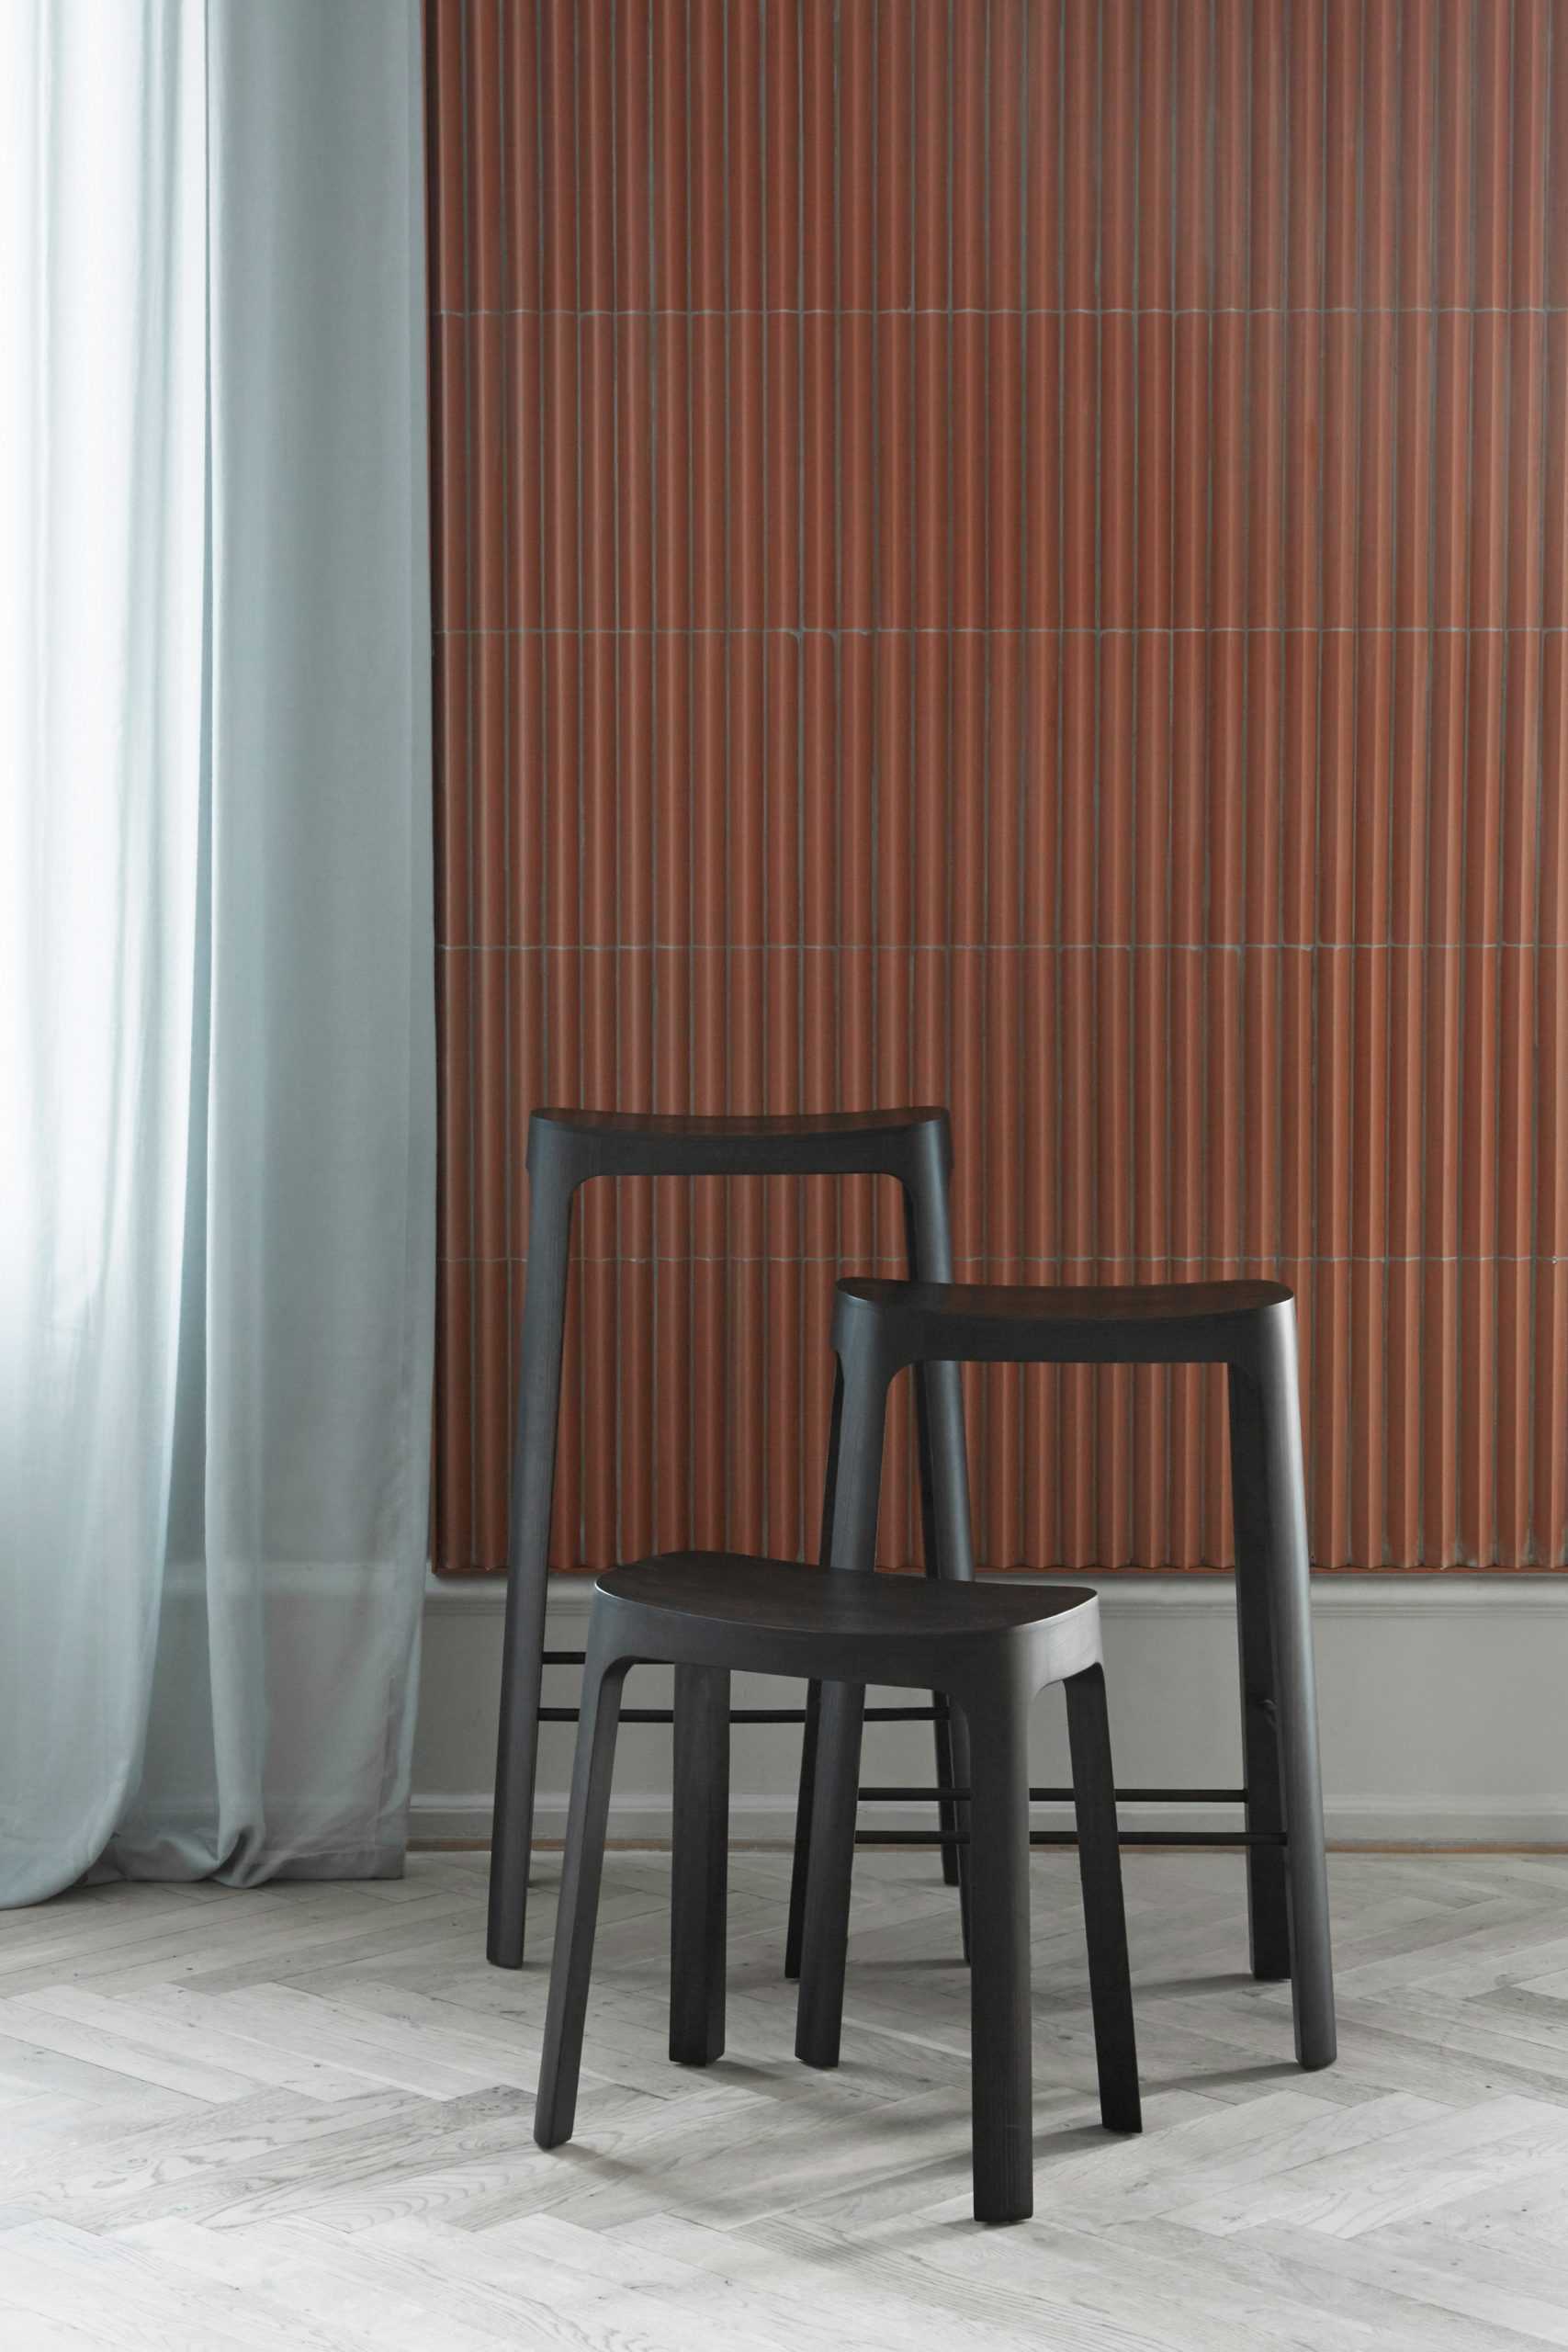 Daniel Schofield设计的松木Crofton凳子向亚洲的设计传统致敬